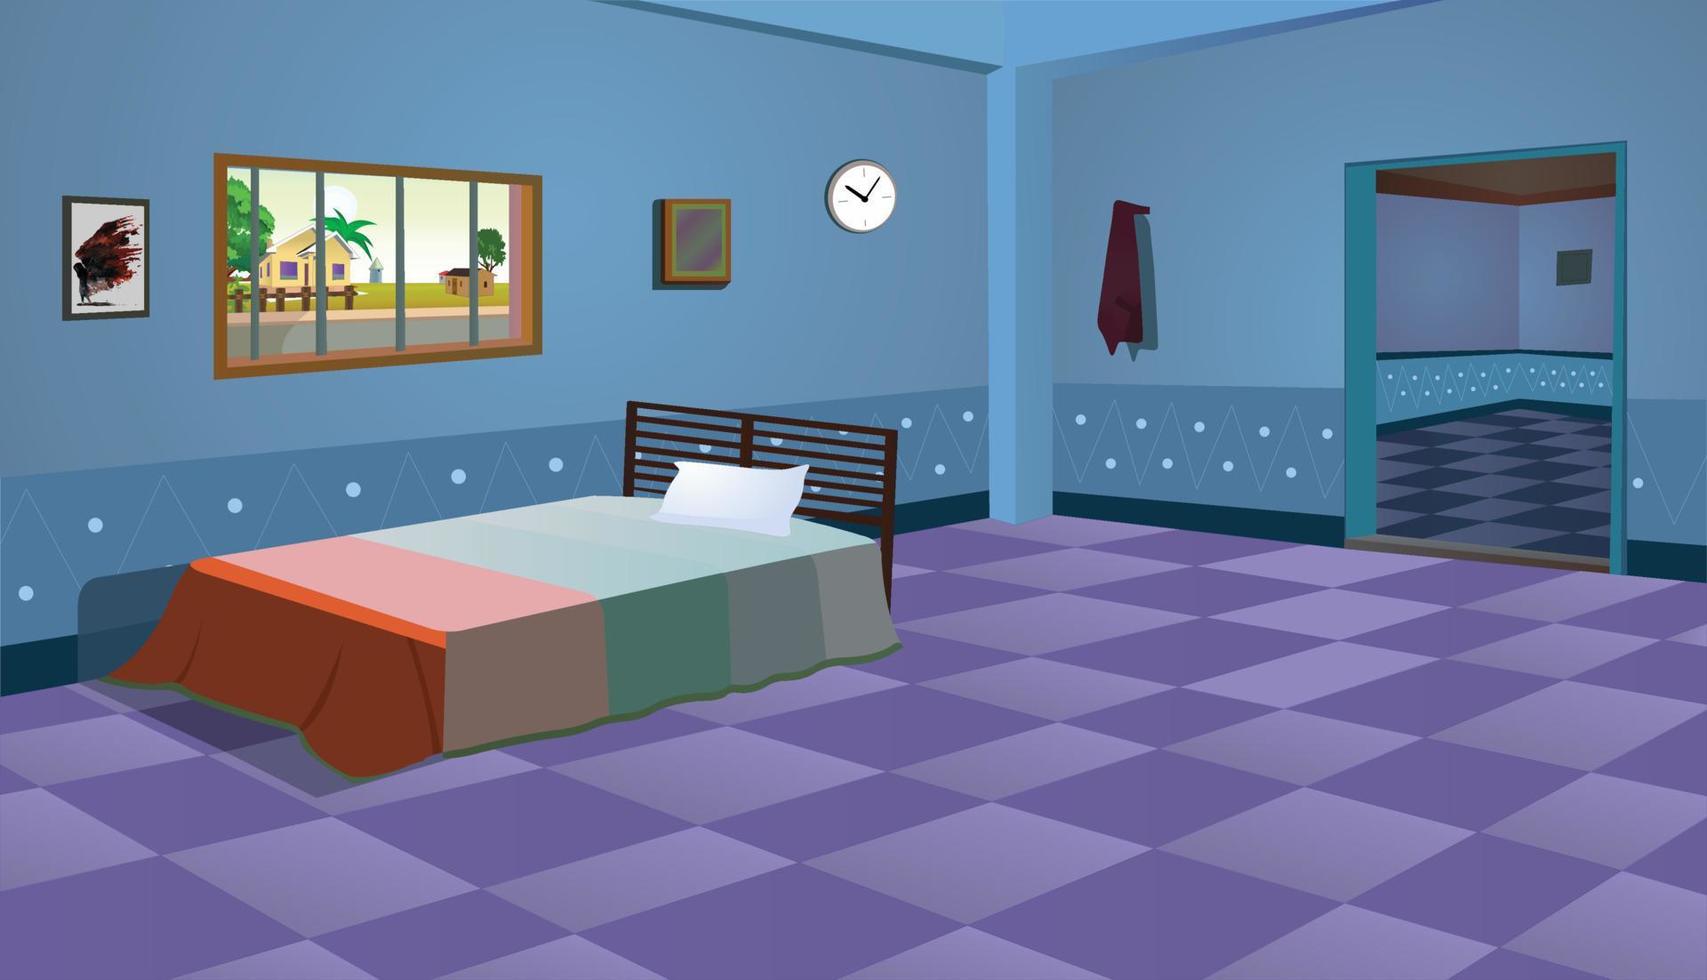 pauvre chambre à l'intérieur de fond de dessin animé, illustration d'illustration vectorielle de chambre. vecteur